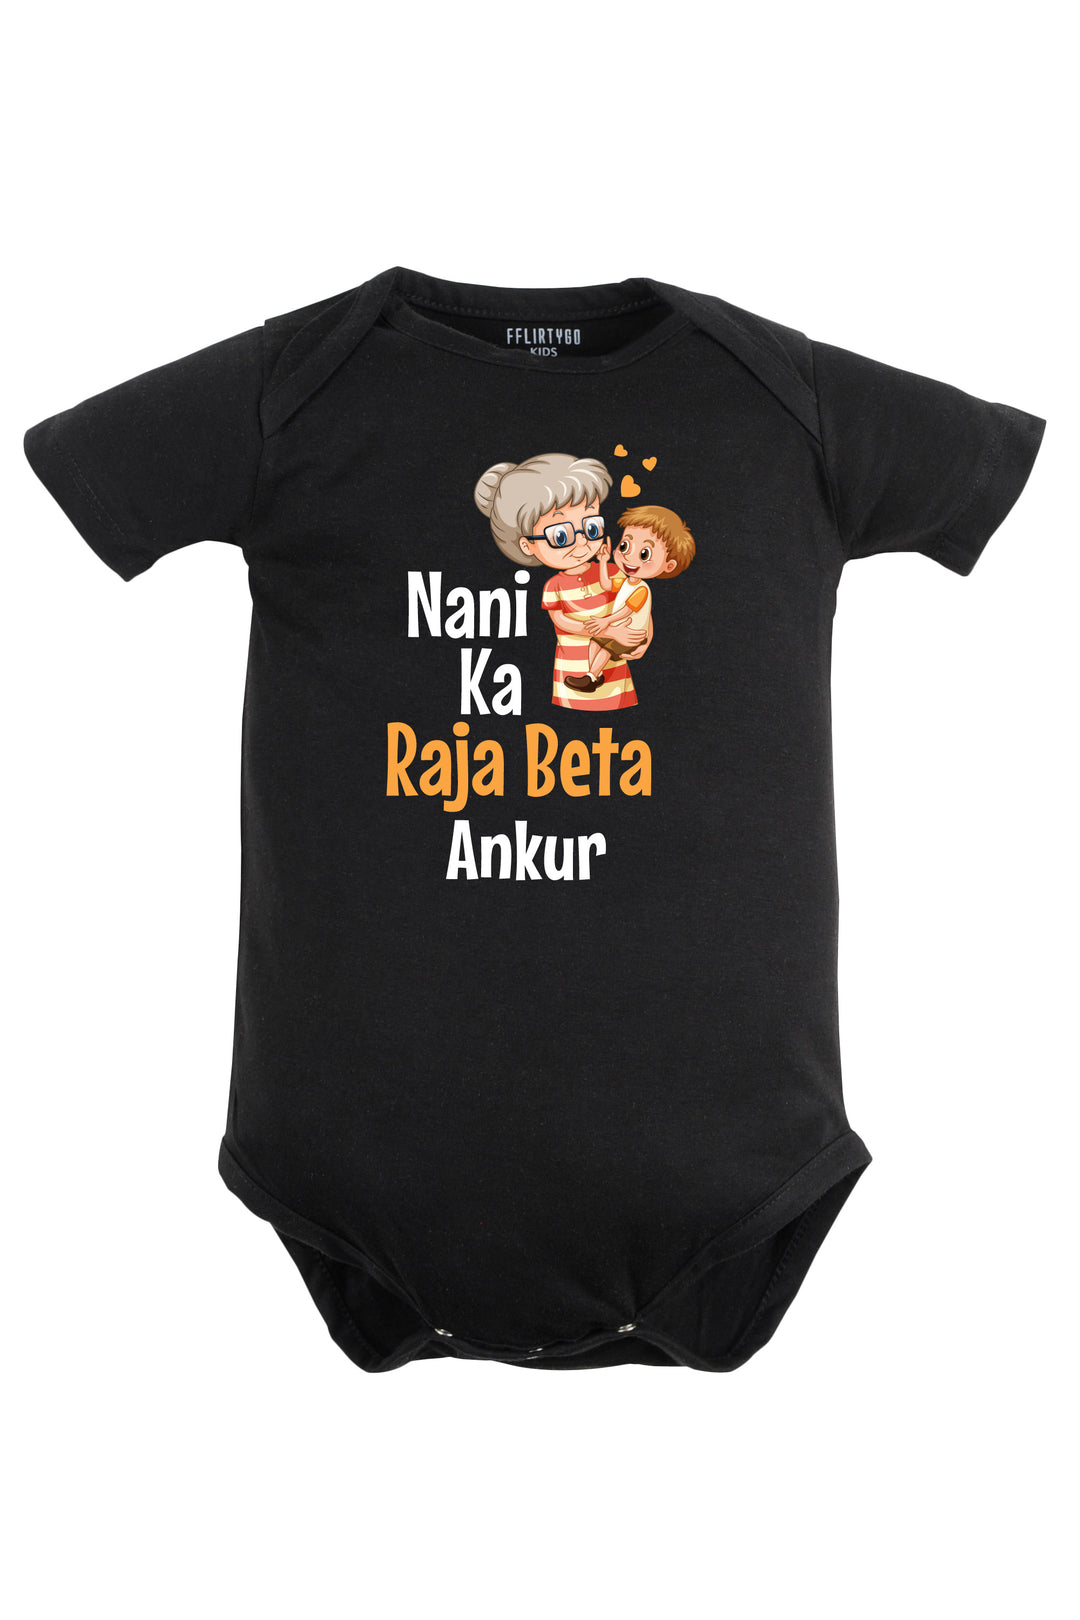 Nani Ka Raja Beta Baby Romper | Onesies w/ Custom Name